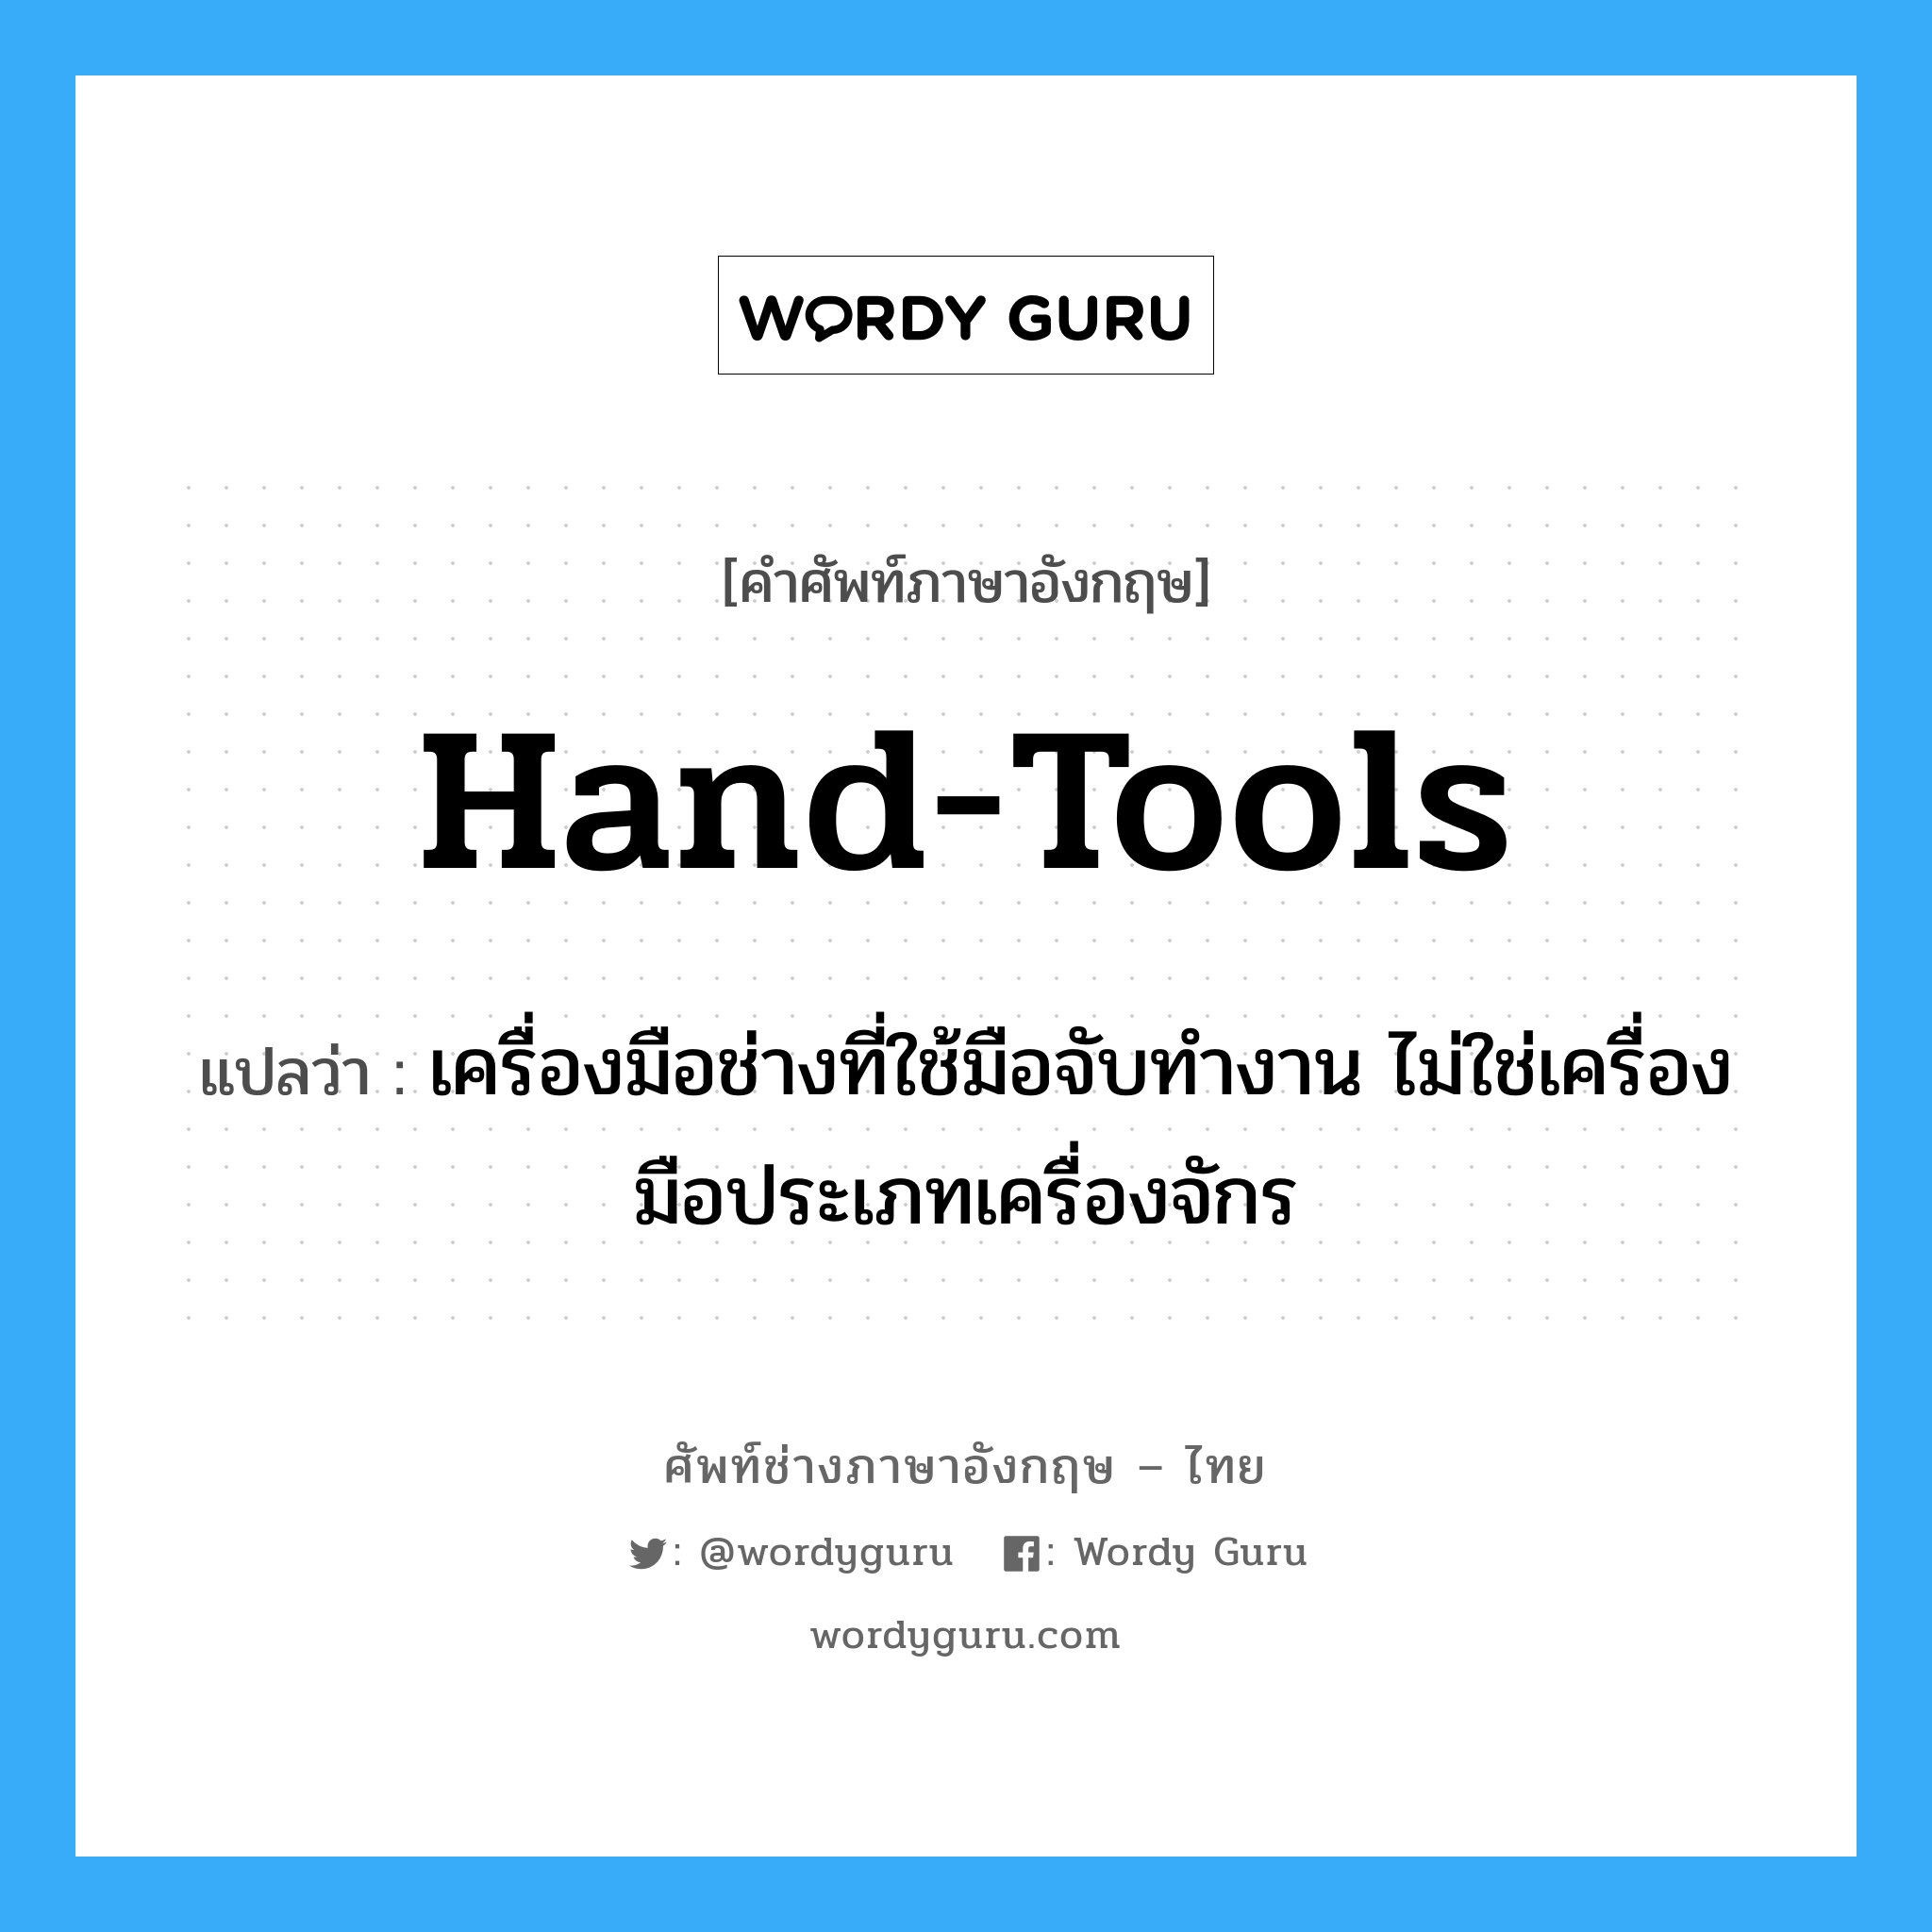 hand-tools แปลว่า?, คำศัพท์ช่างภาษาอังกฤษ - ไทย hand-tools คำศัพท์ภาษาอังกฤษ hand-tools แปลว่า เครื่องมือช่างที่ใช้มือจับทำงาน ไม่ใช่เครื่องมือประเภทเครื่องจักร